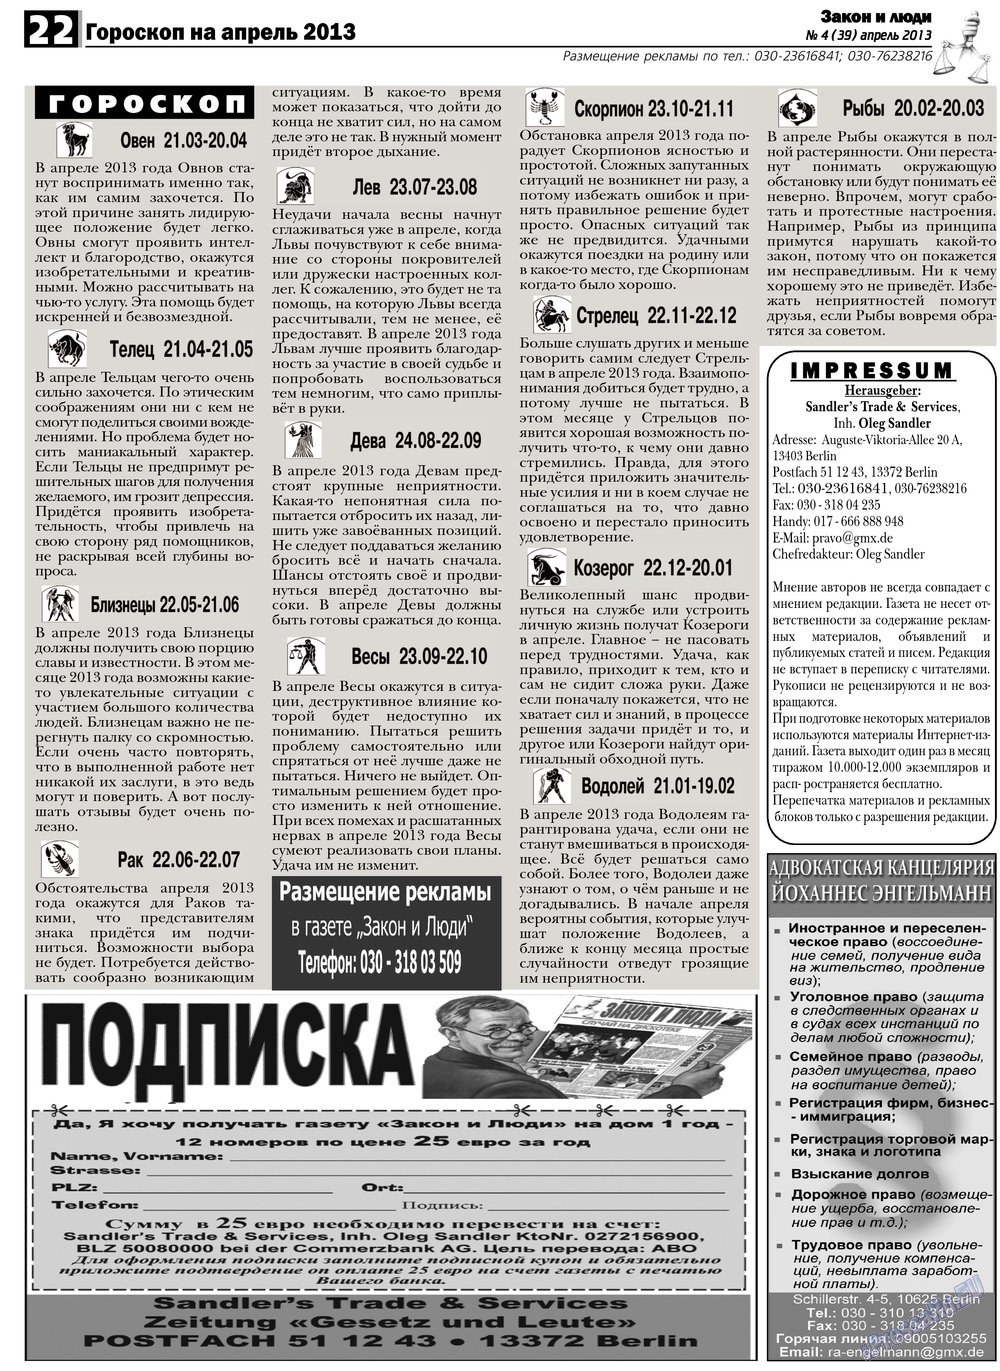 Закон и люди, газета. 2013 №4 стр.22